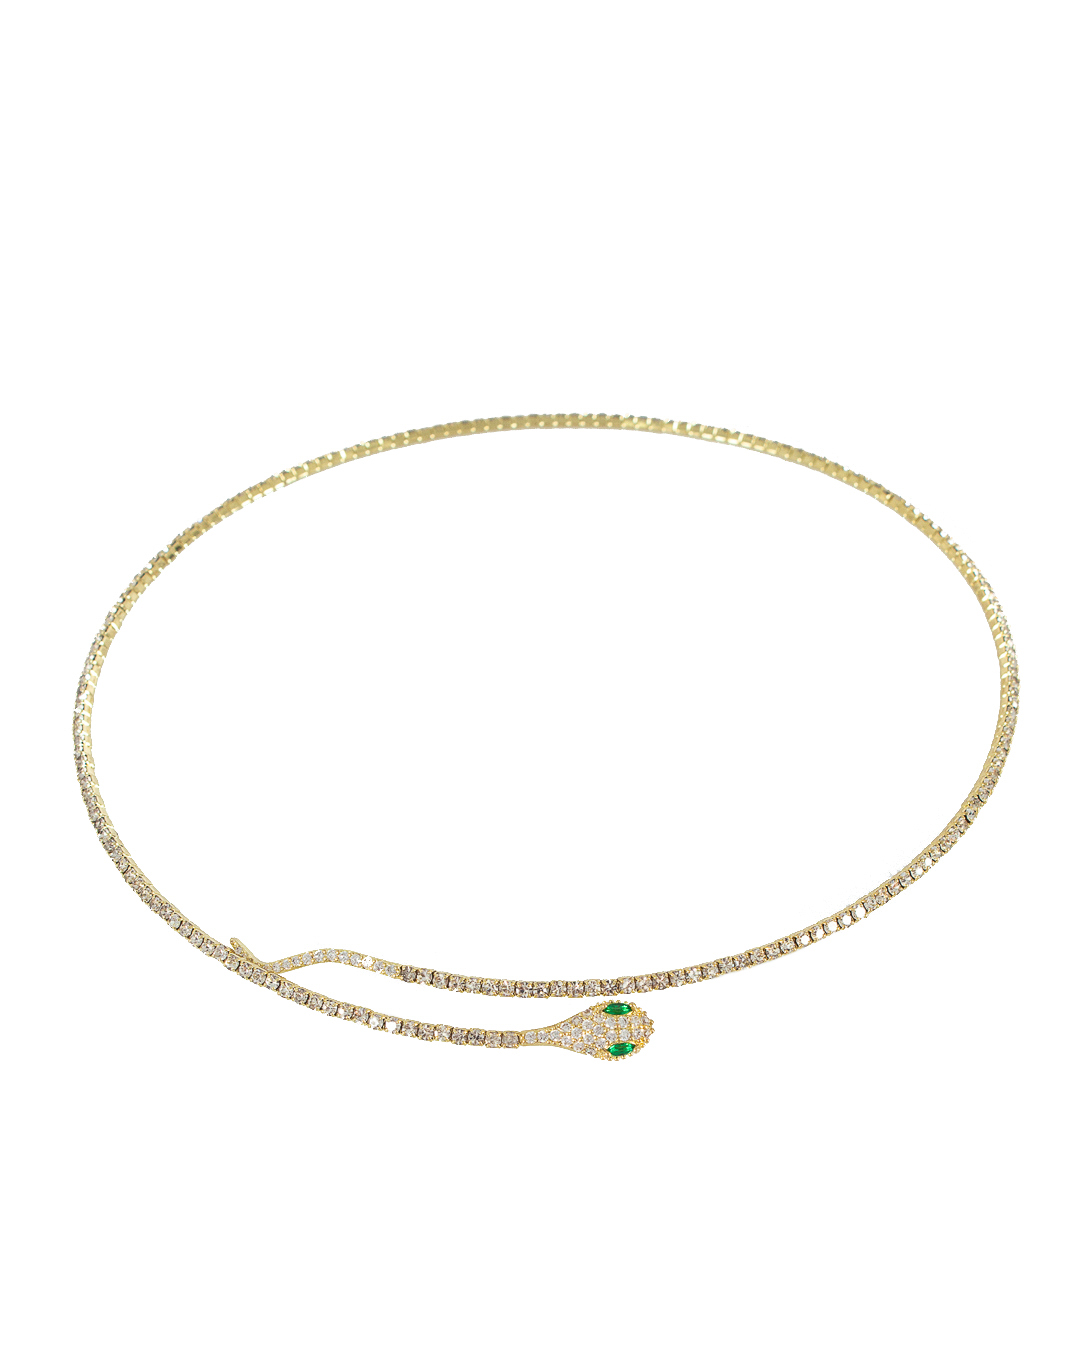 ожерелье Marina Fossati A20 золотой+прозрачный UNI, размер UNI, цвет золотой+прозрачный A20 золотой+прозрачный UNI - фото 1